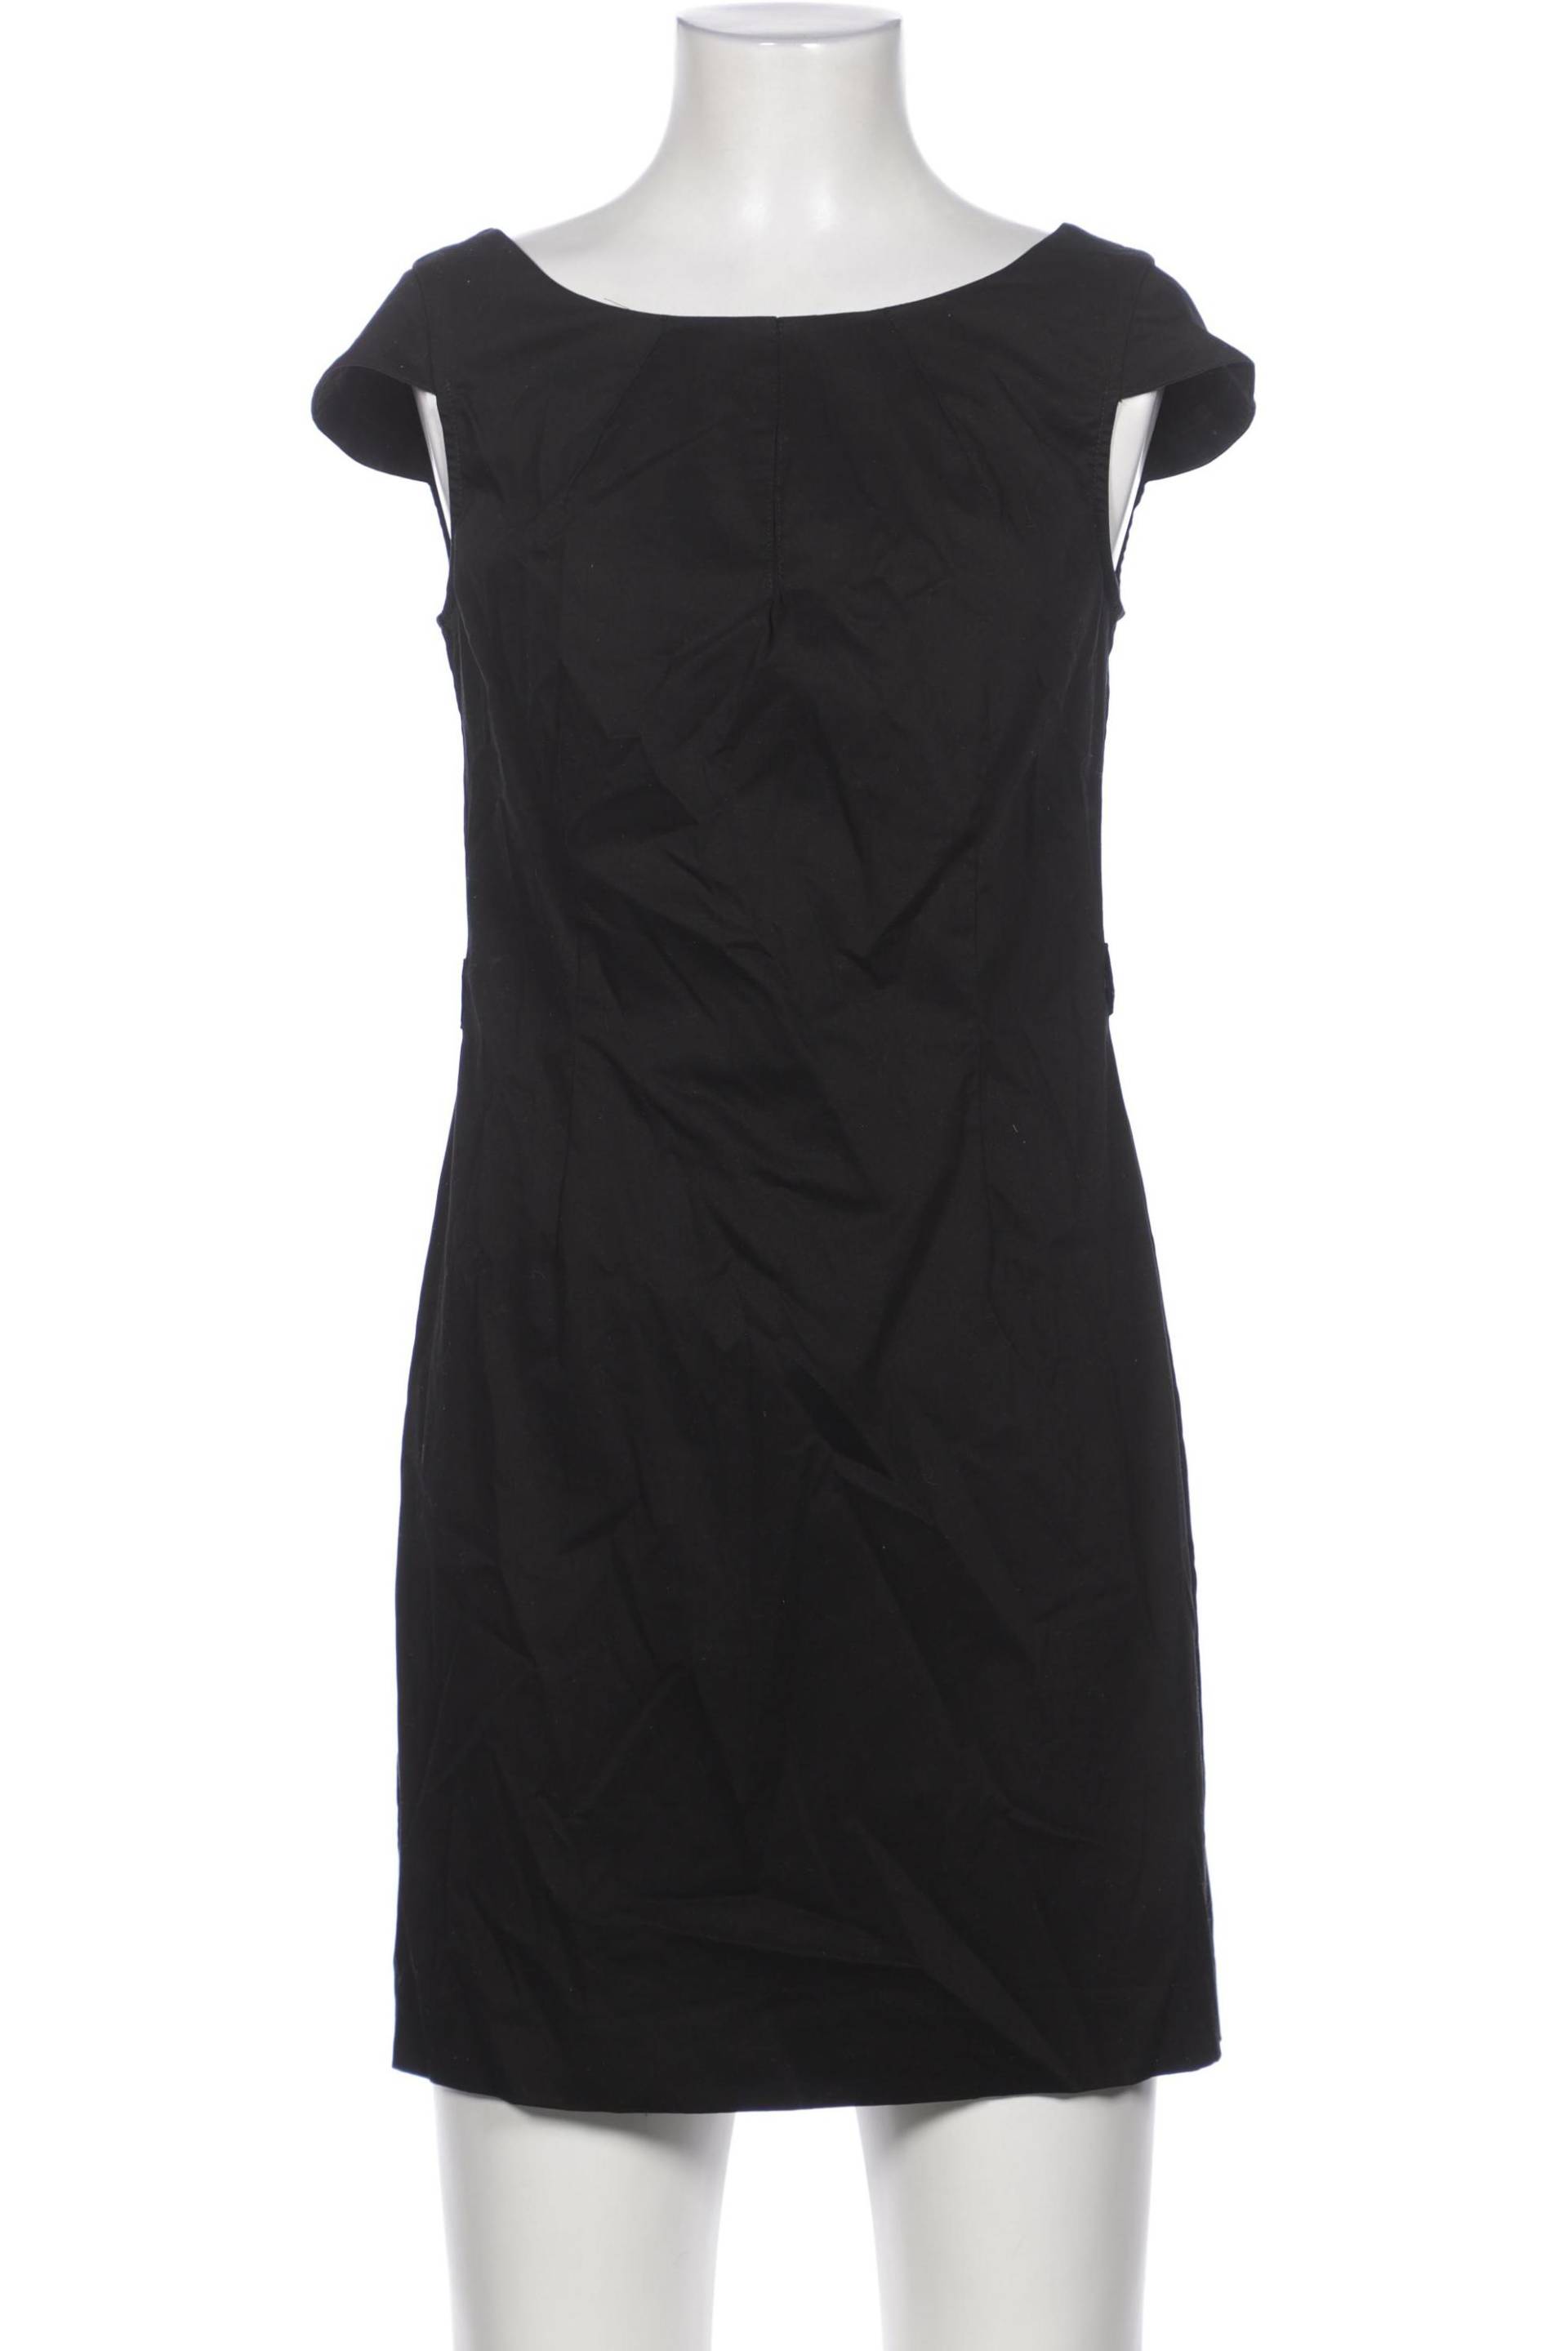 TOM TAILOR Denim Damen Kleid, schwarz von Tom Tailor Denim